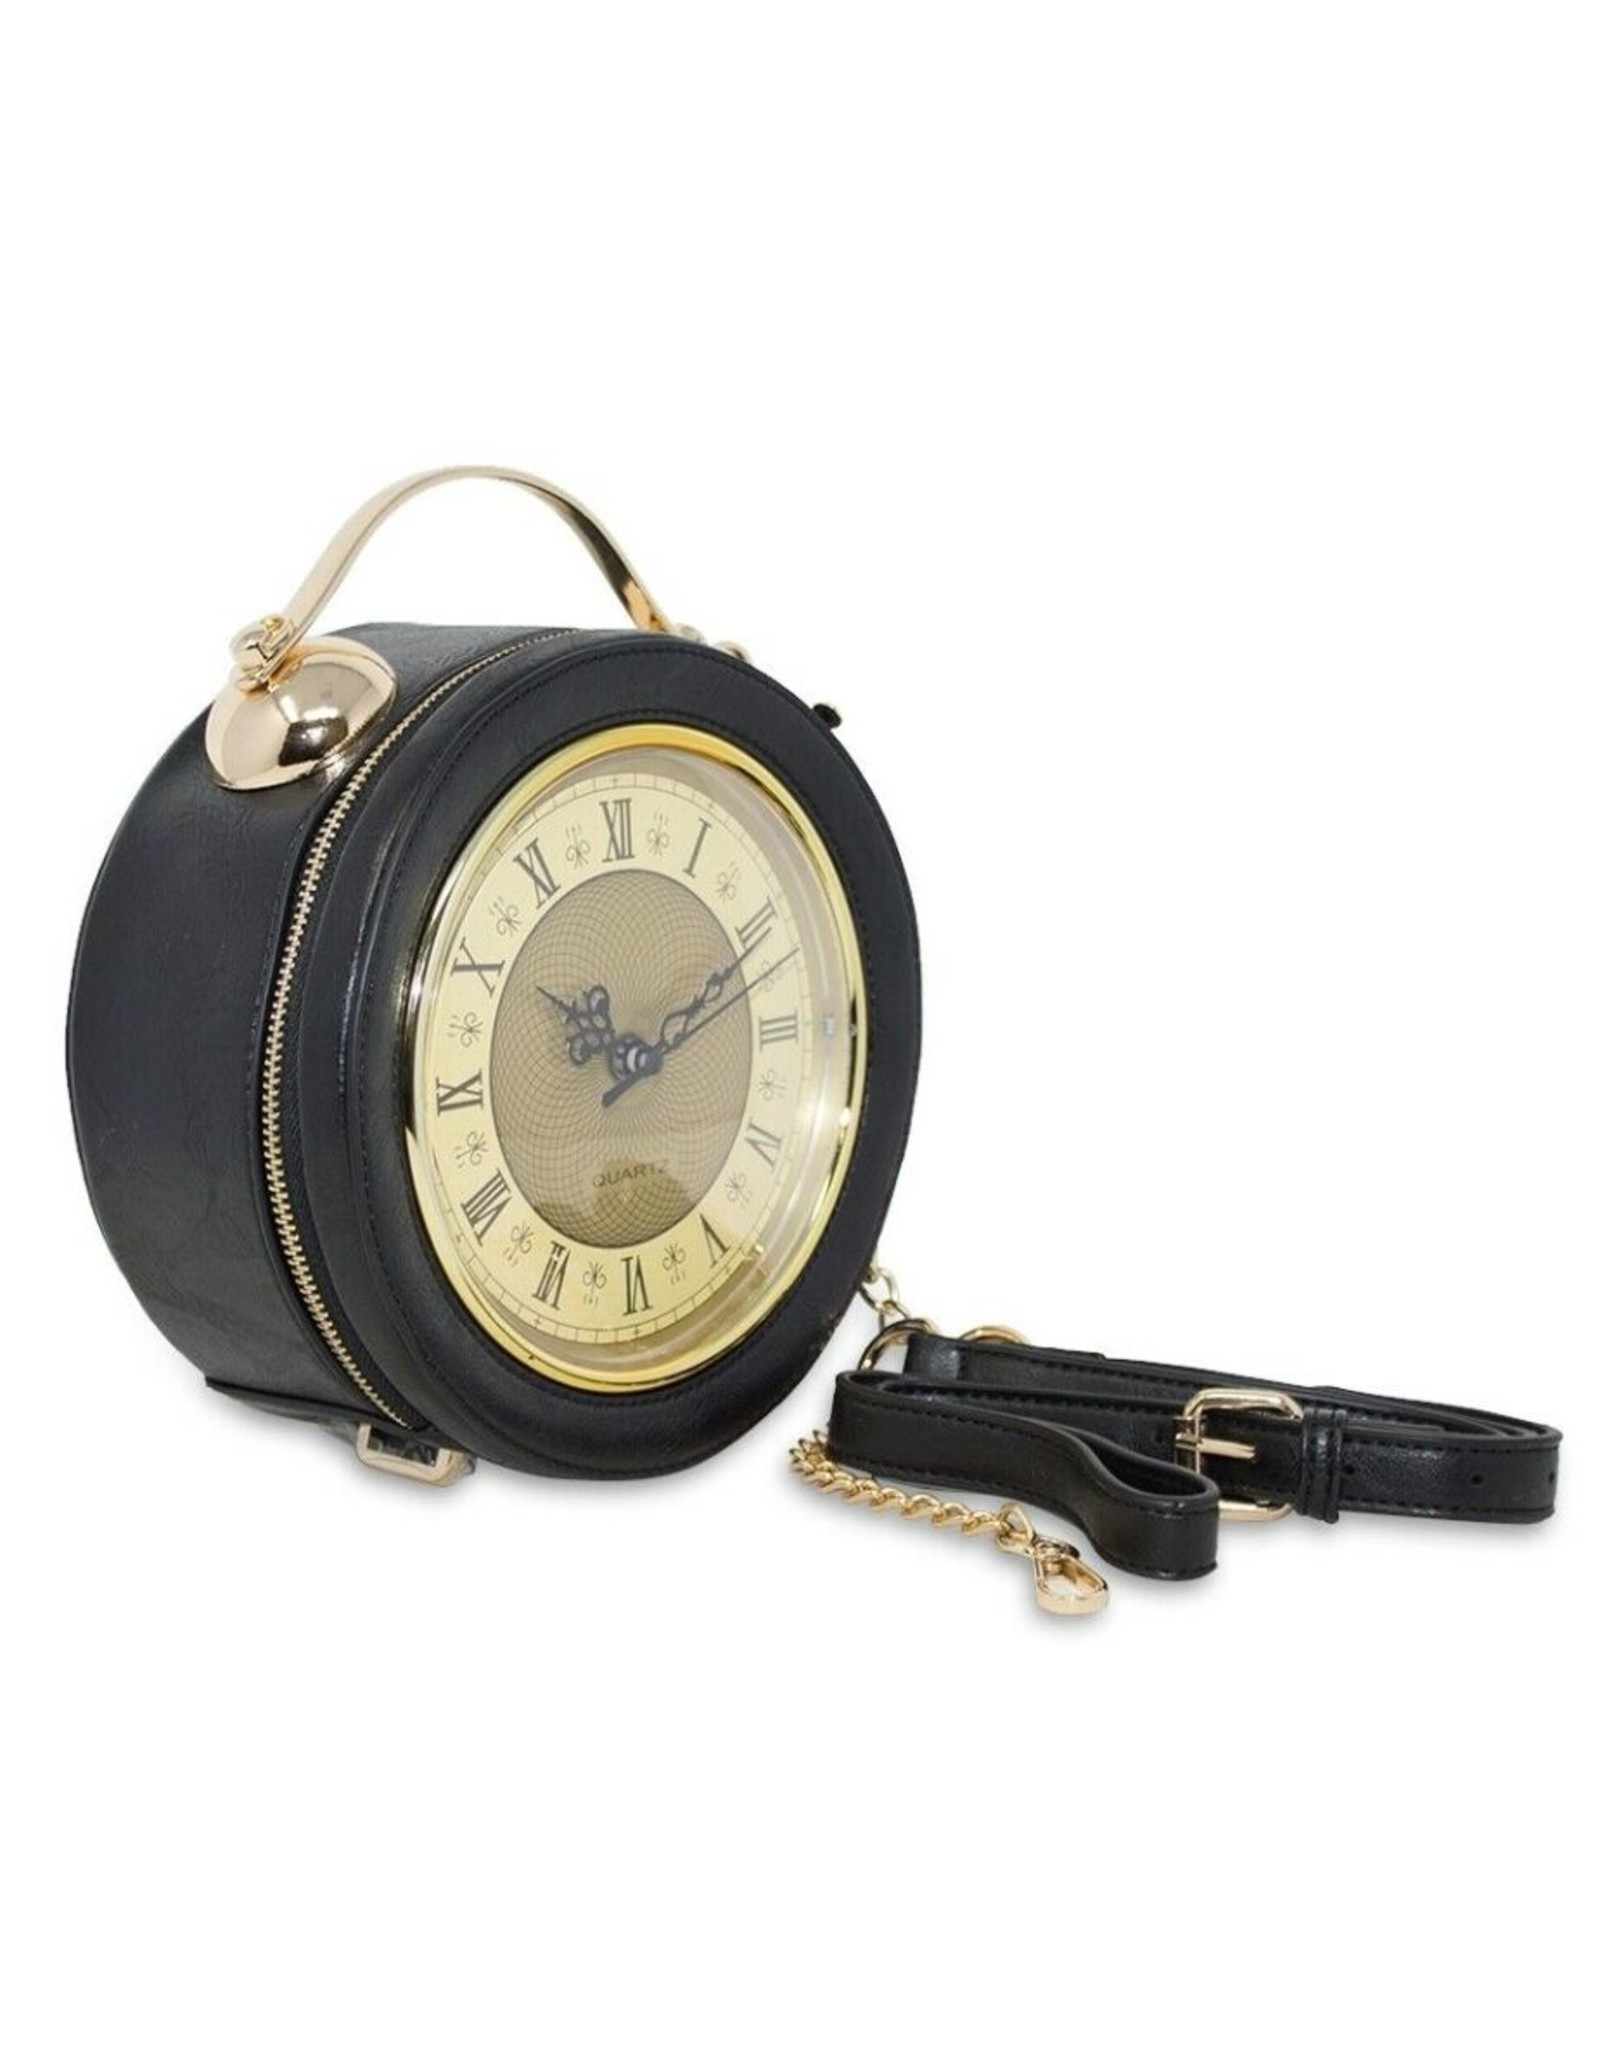 Magic Bags Fantasy bags - Clock Handbag-shoulderbag with Working Clock black